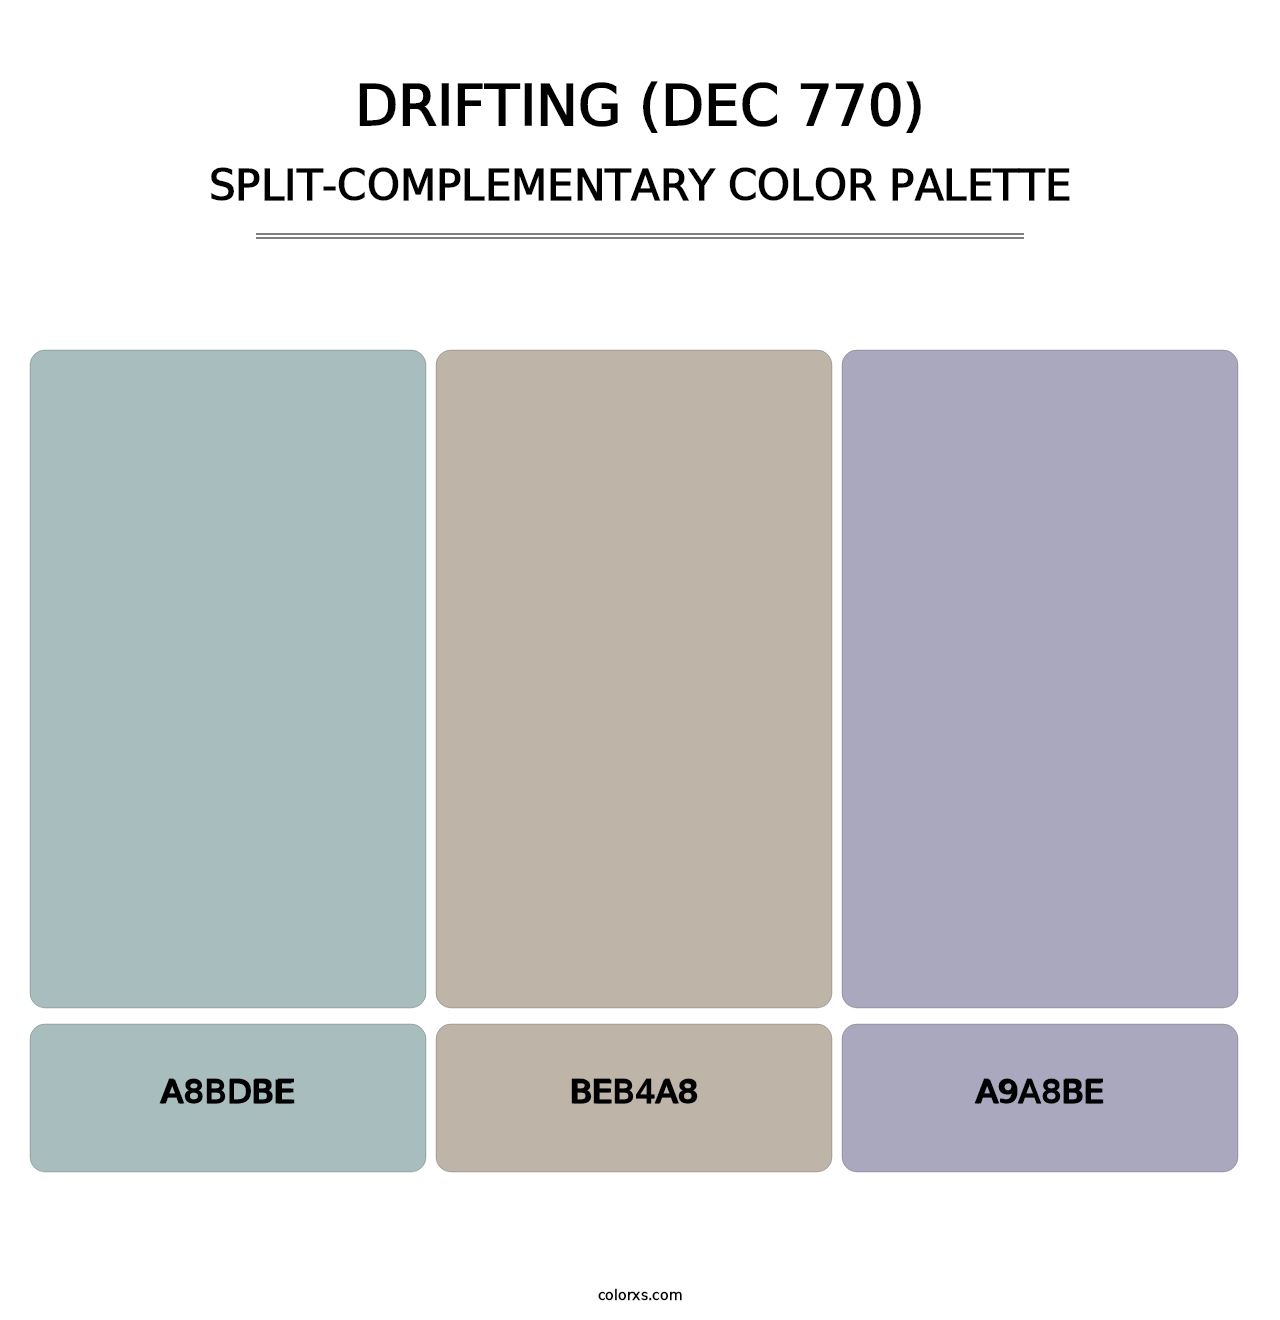 Drifting (DEC 770) - Split-Complementary Color Palette